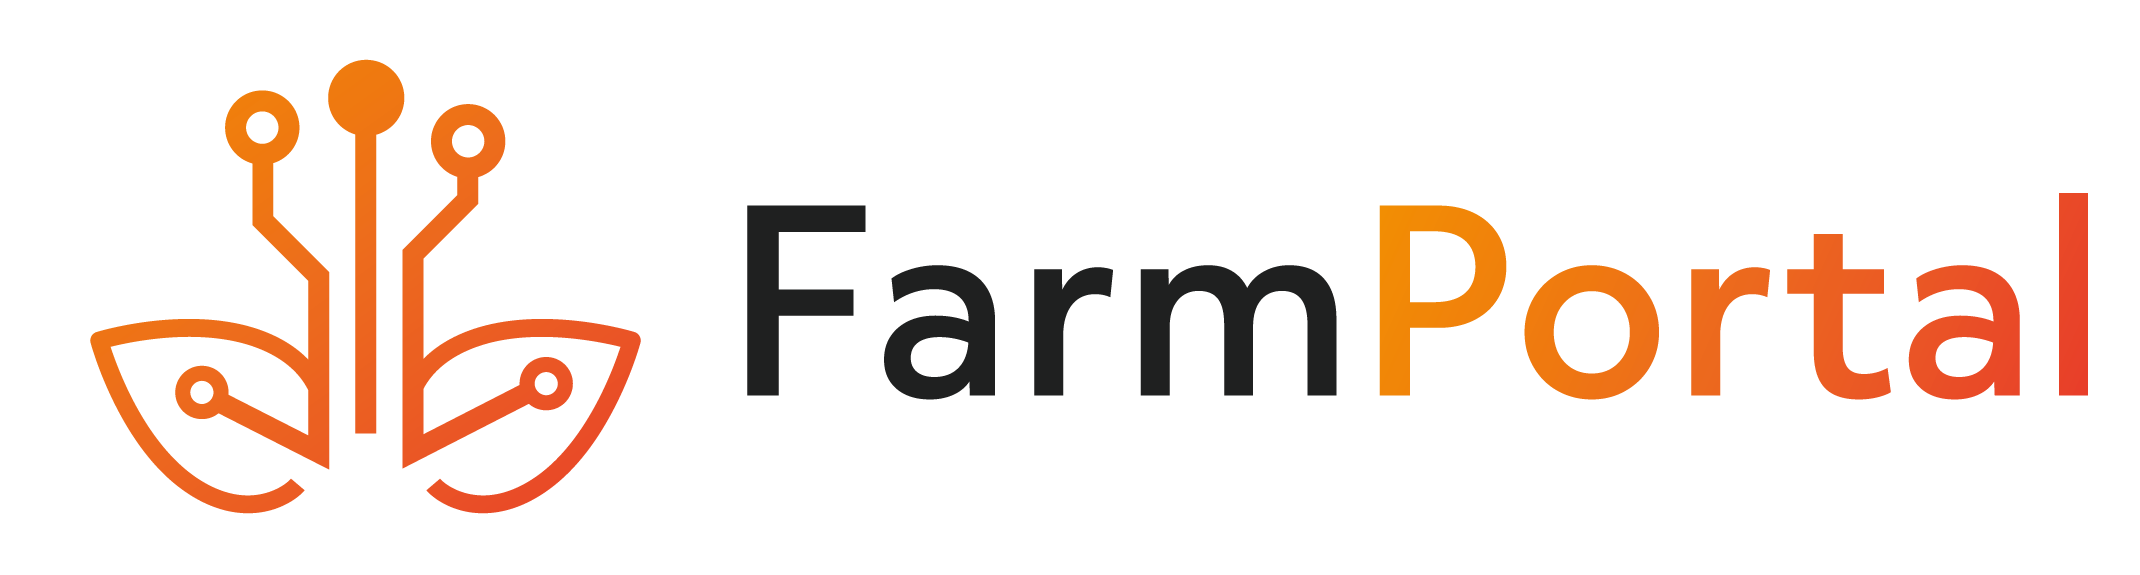 FarmPortal - nowoczesne oprogramowanie do zarządzania produkcją rolną